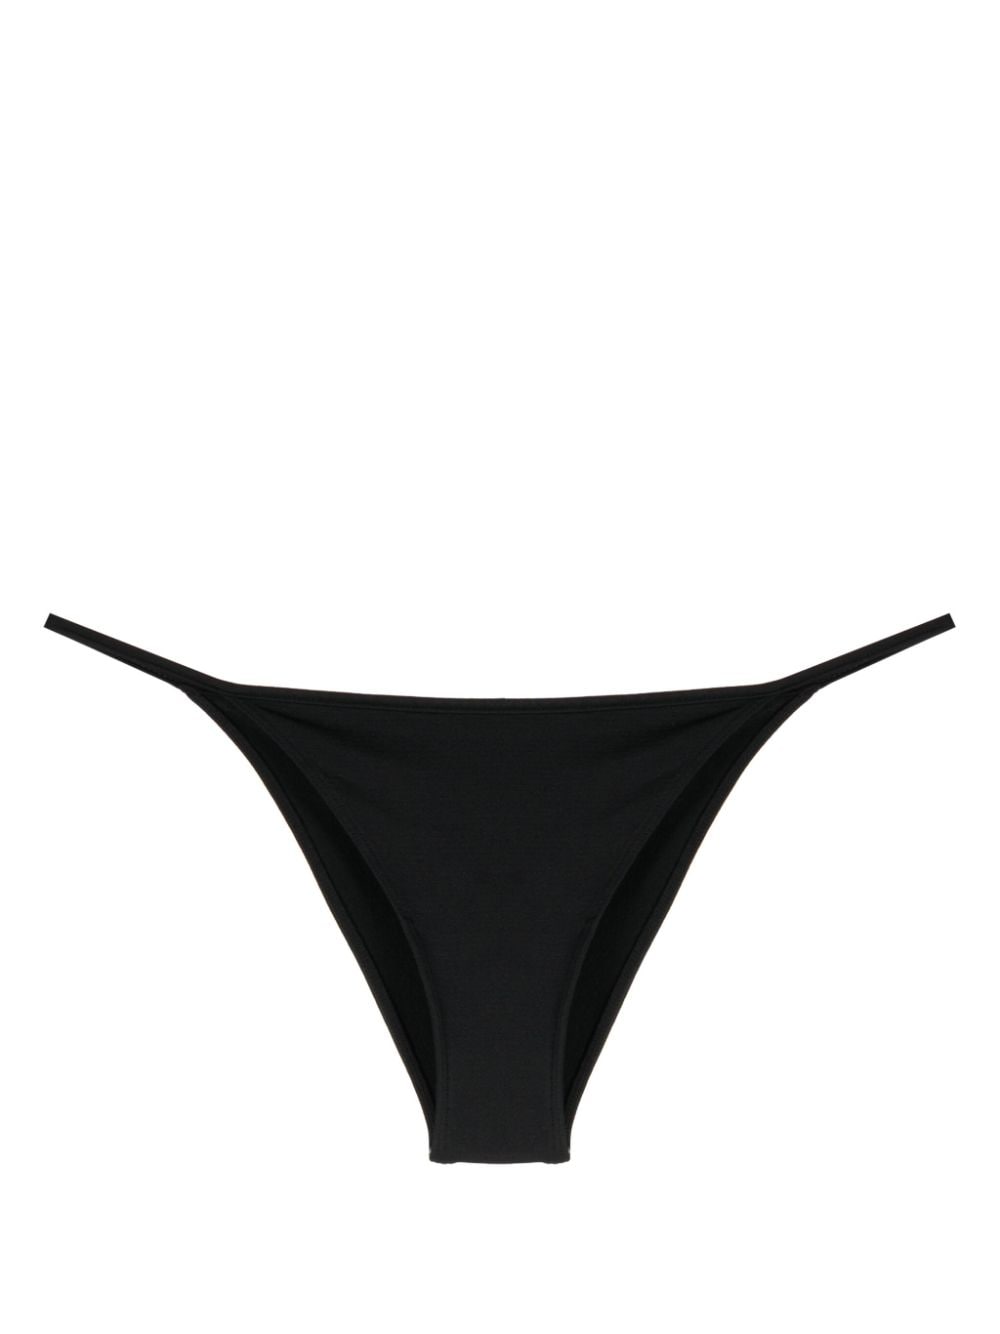 PRISM² Zestful bikini bottom - Black von PRISM²